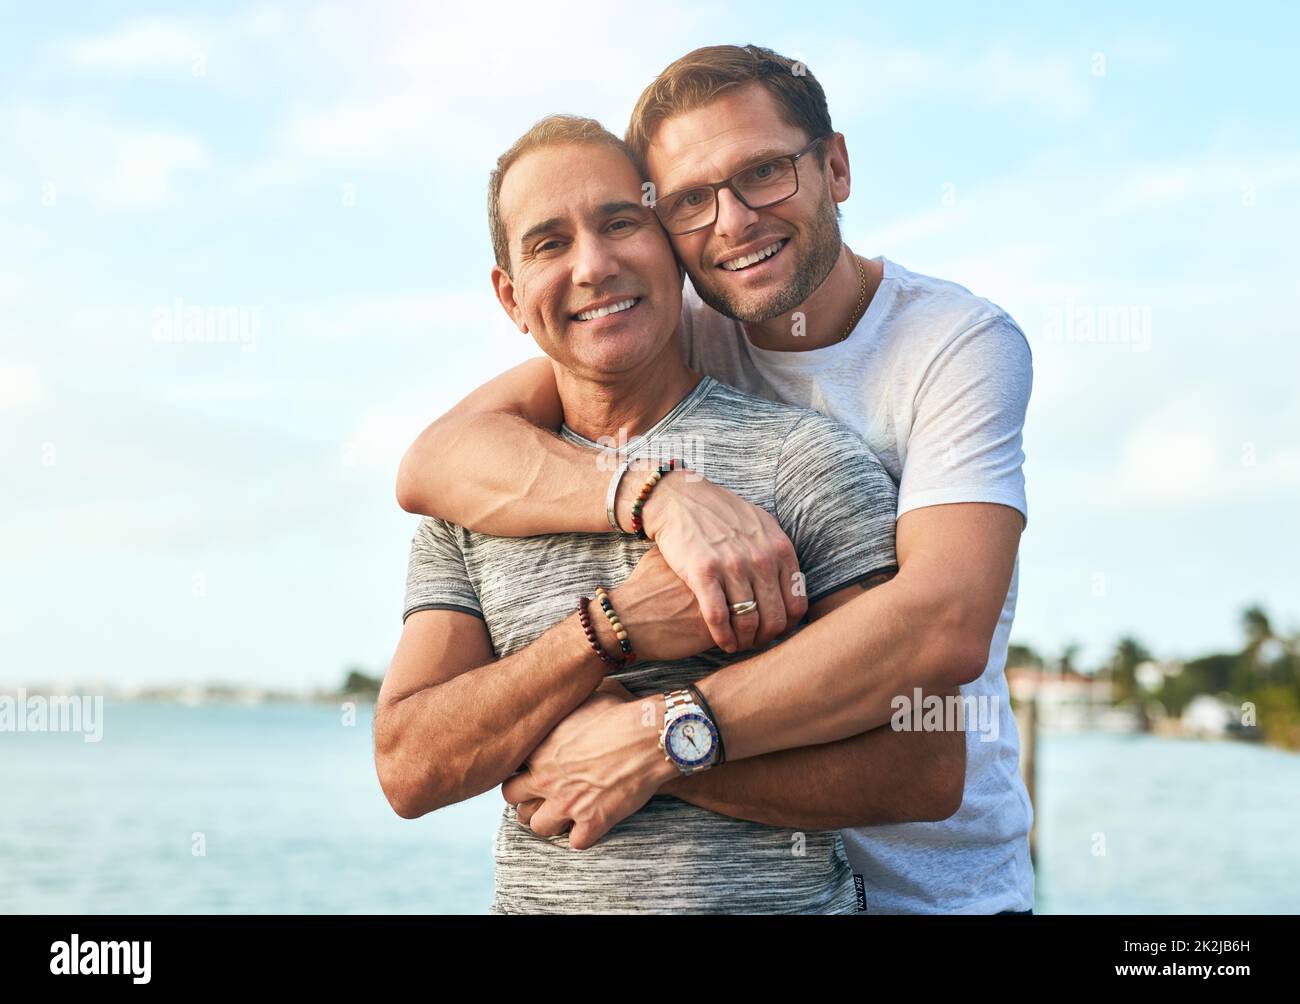 Je suis heureux que vous ayez à passer tous les jours. Portrait d'un couple affectueux et mature passant la journée sur la plage. Banque D'Images